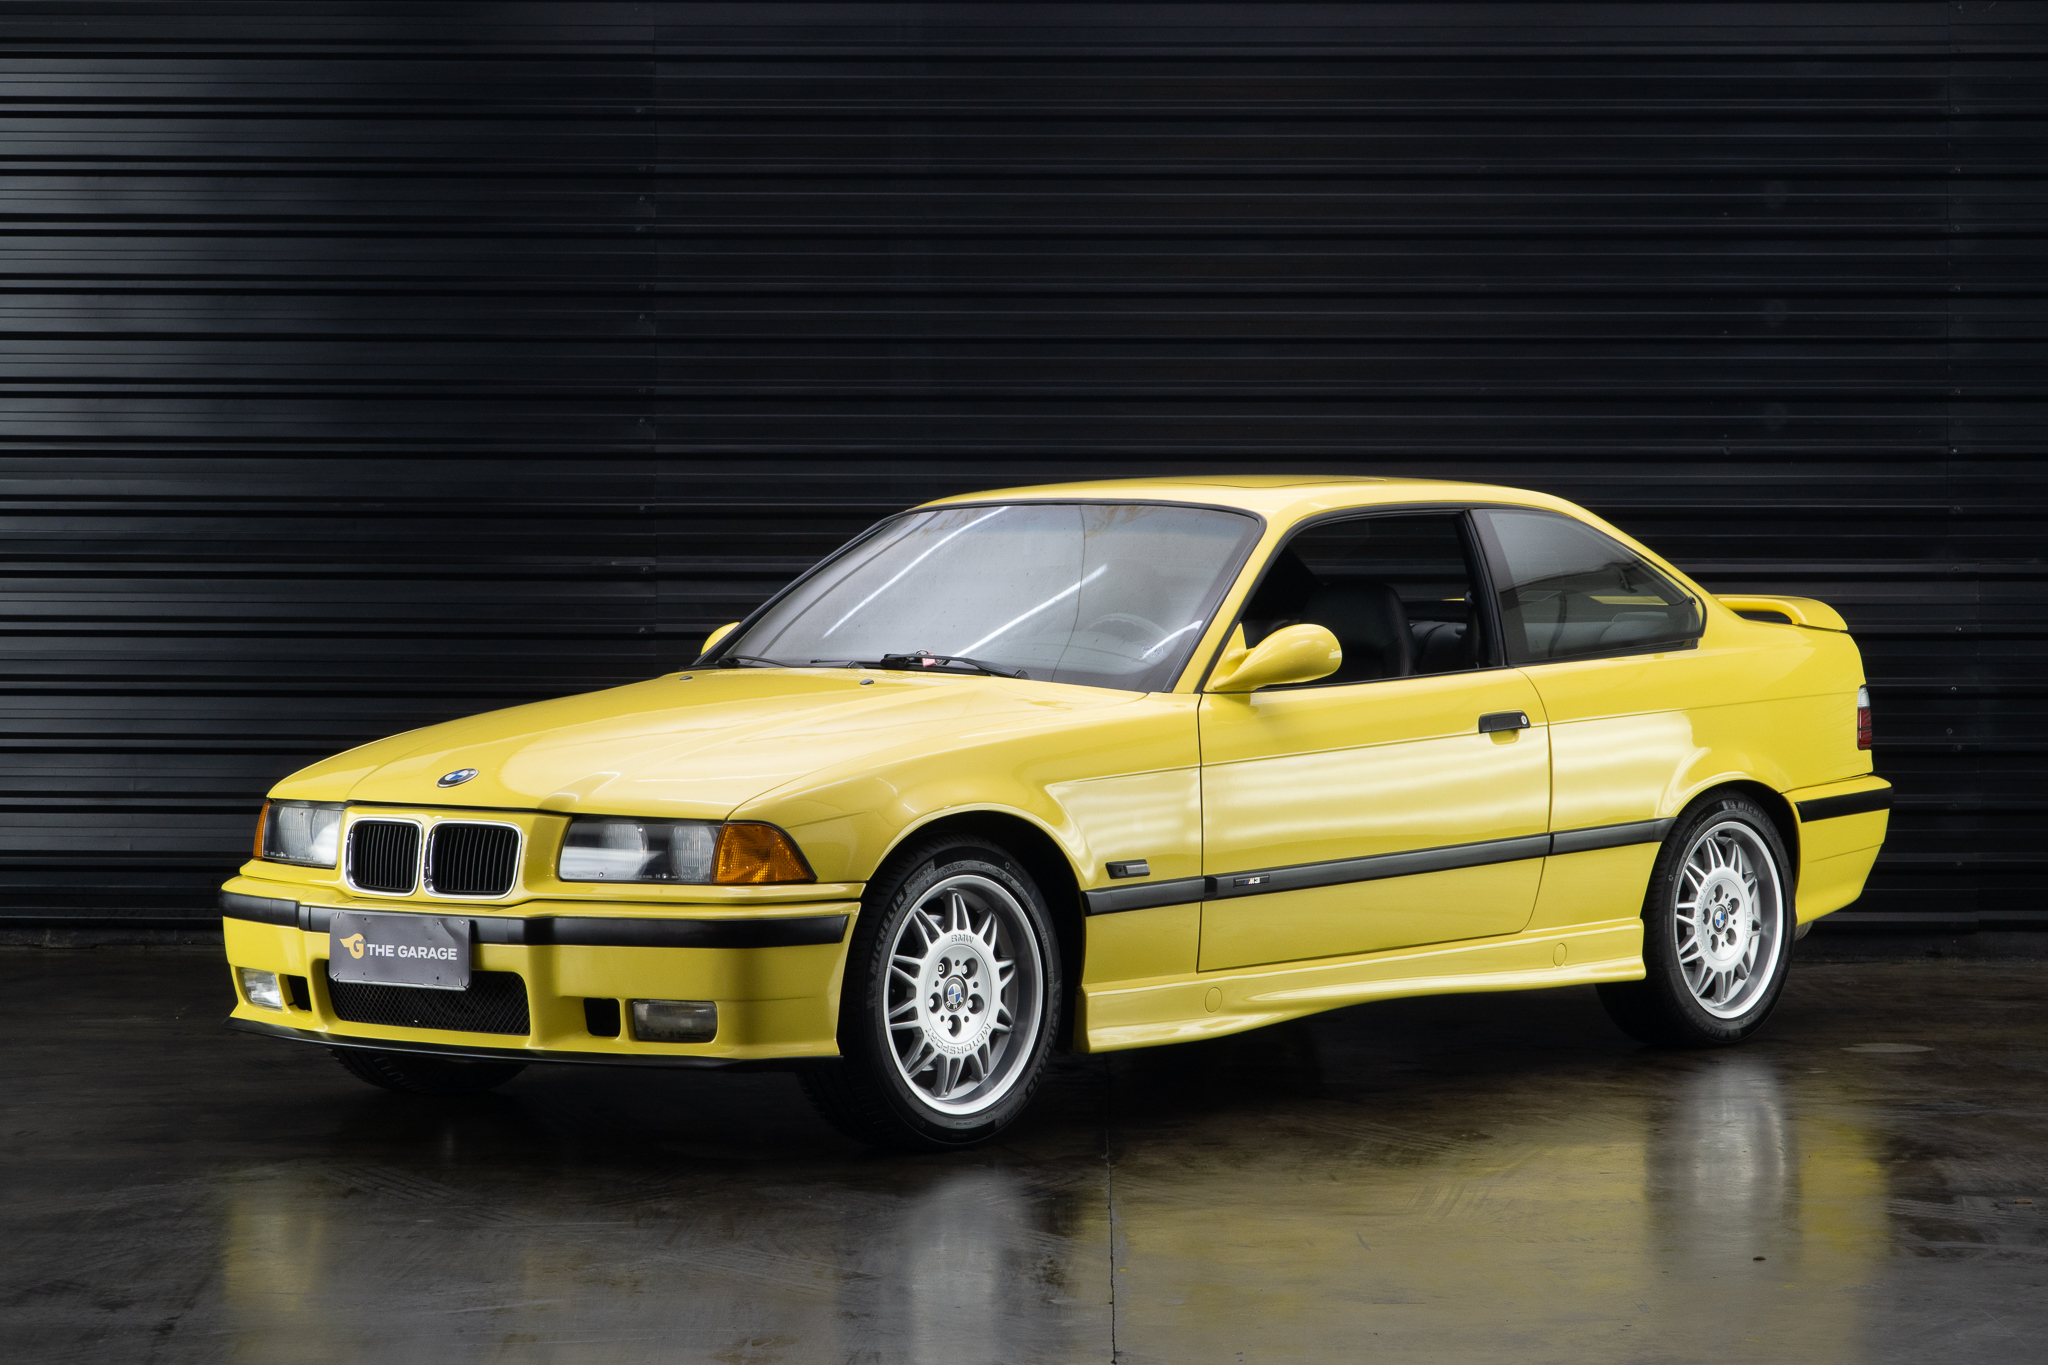 1995 BMW M3 - E36 a venda for sale the garage